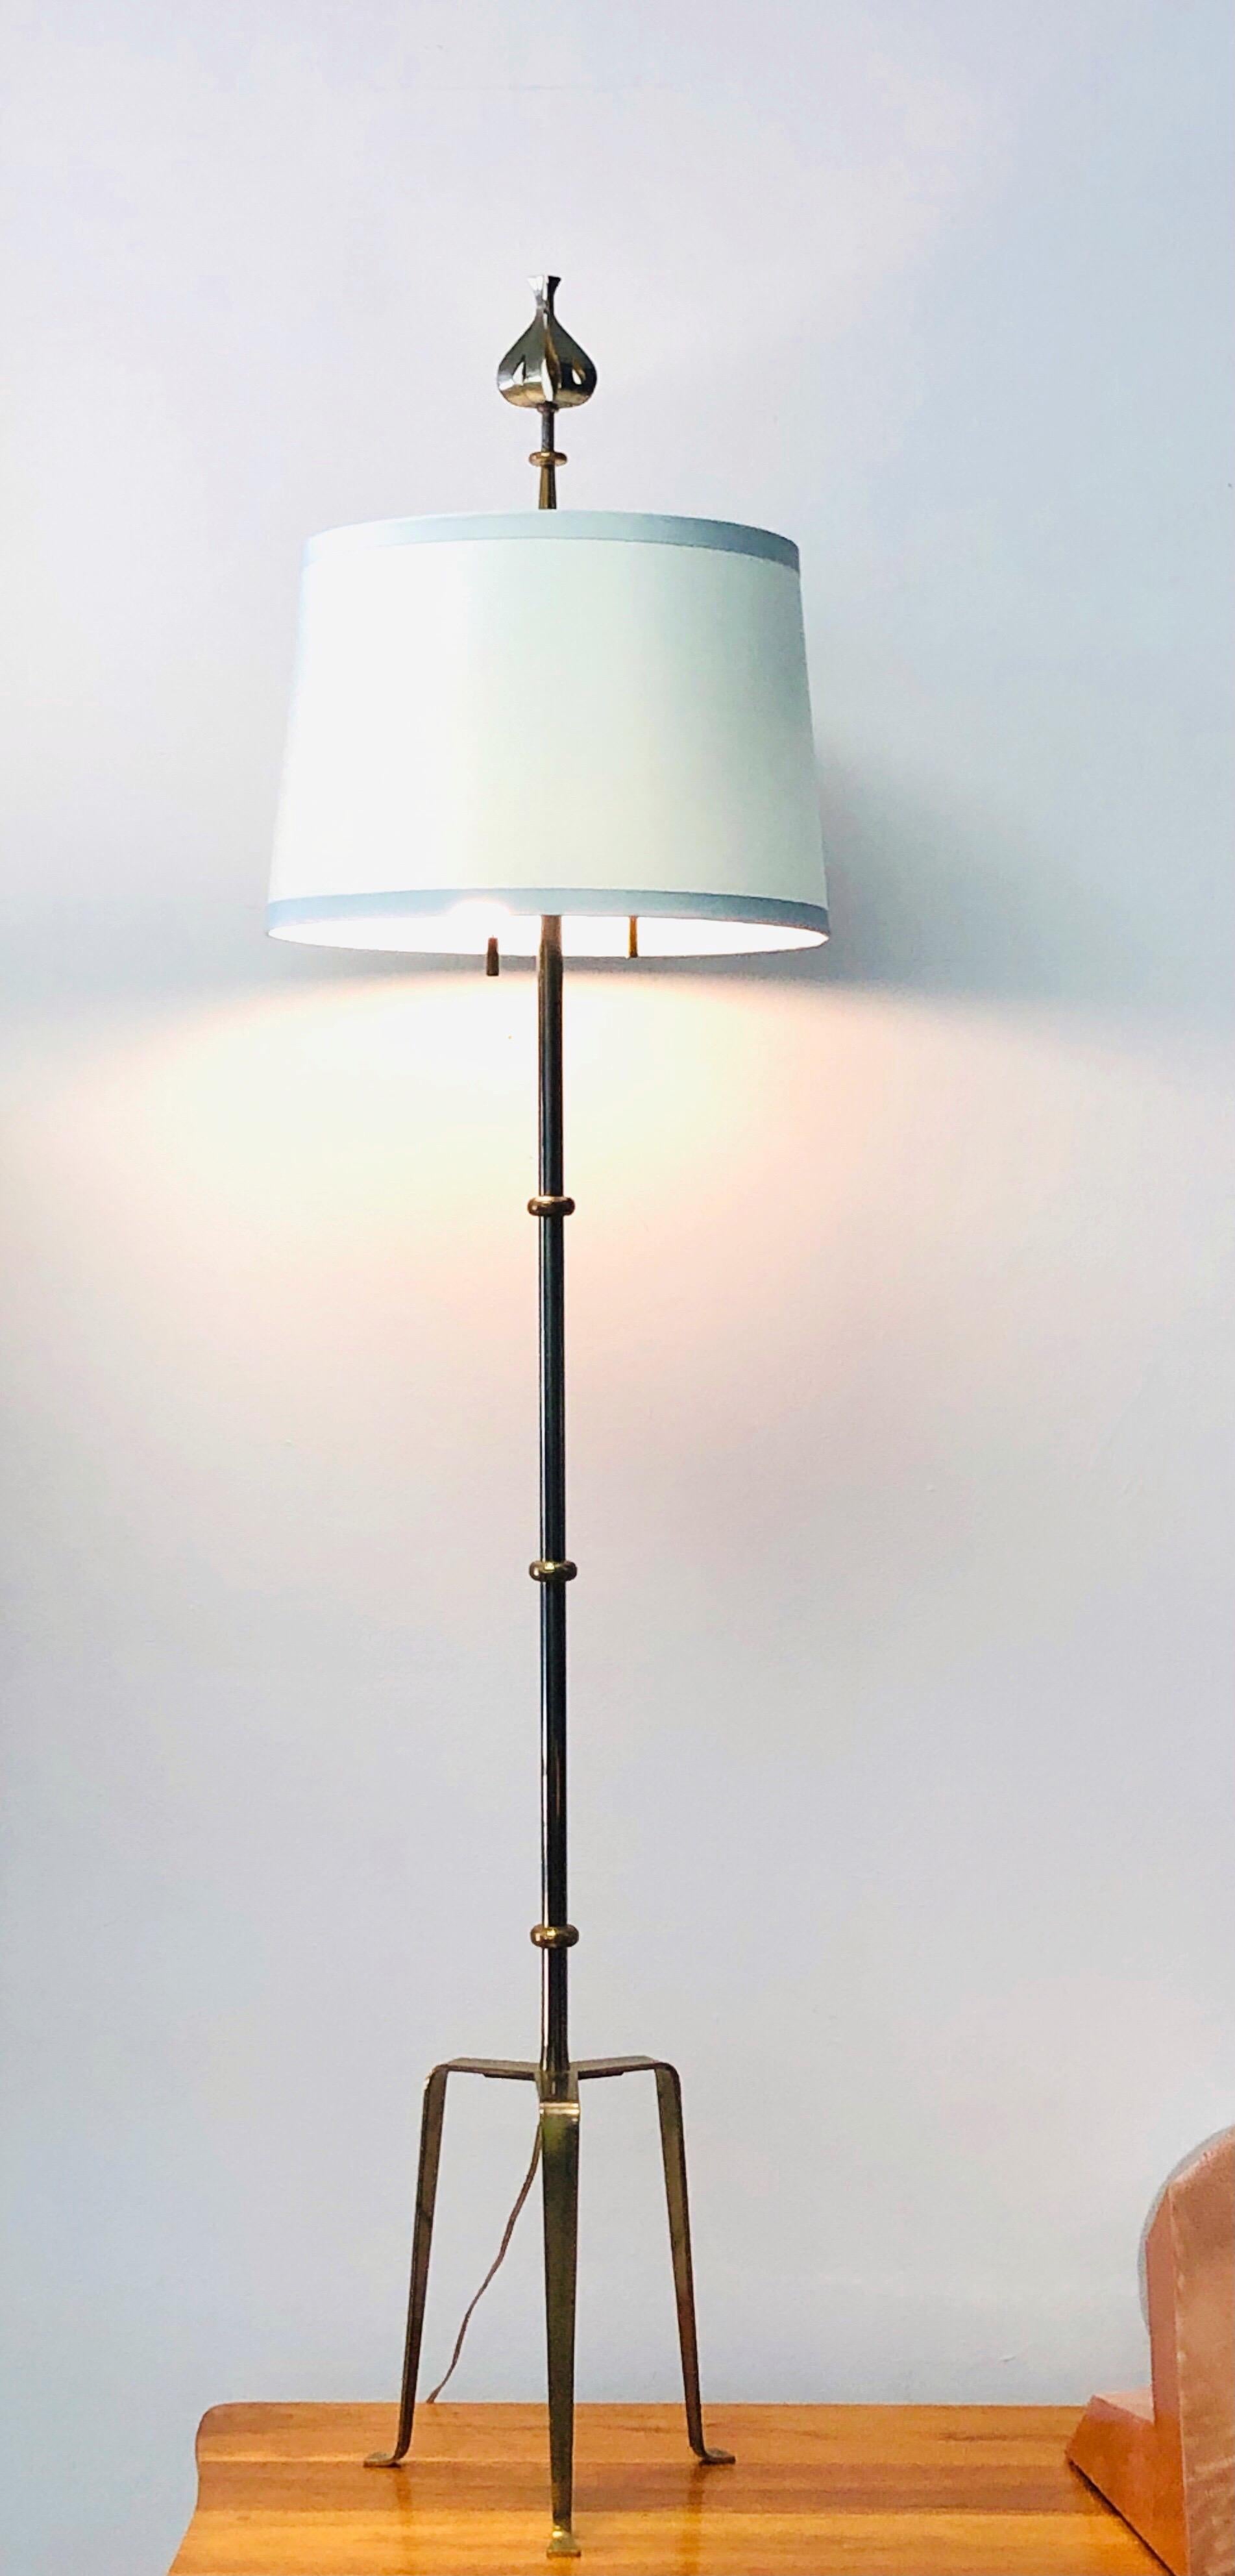 Un rare lampadaire de Tommi Parzinger. Une forme élancée sur une base tripode et couronnée par son épi de faîtage le plus emblématique.